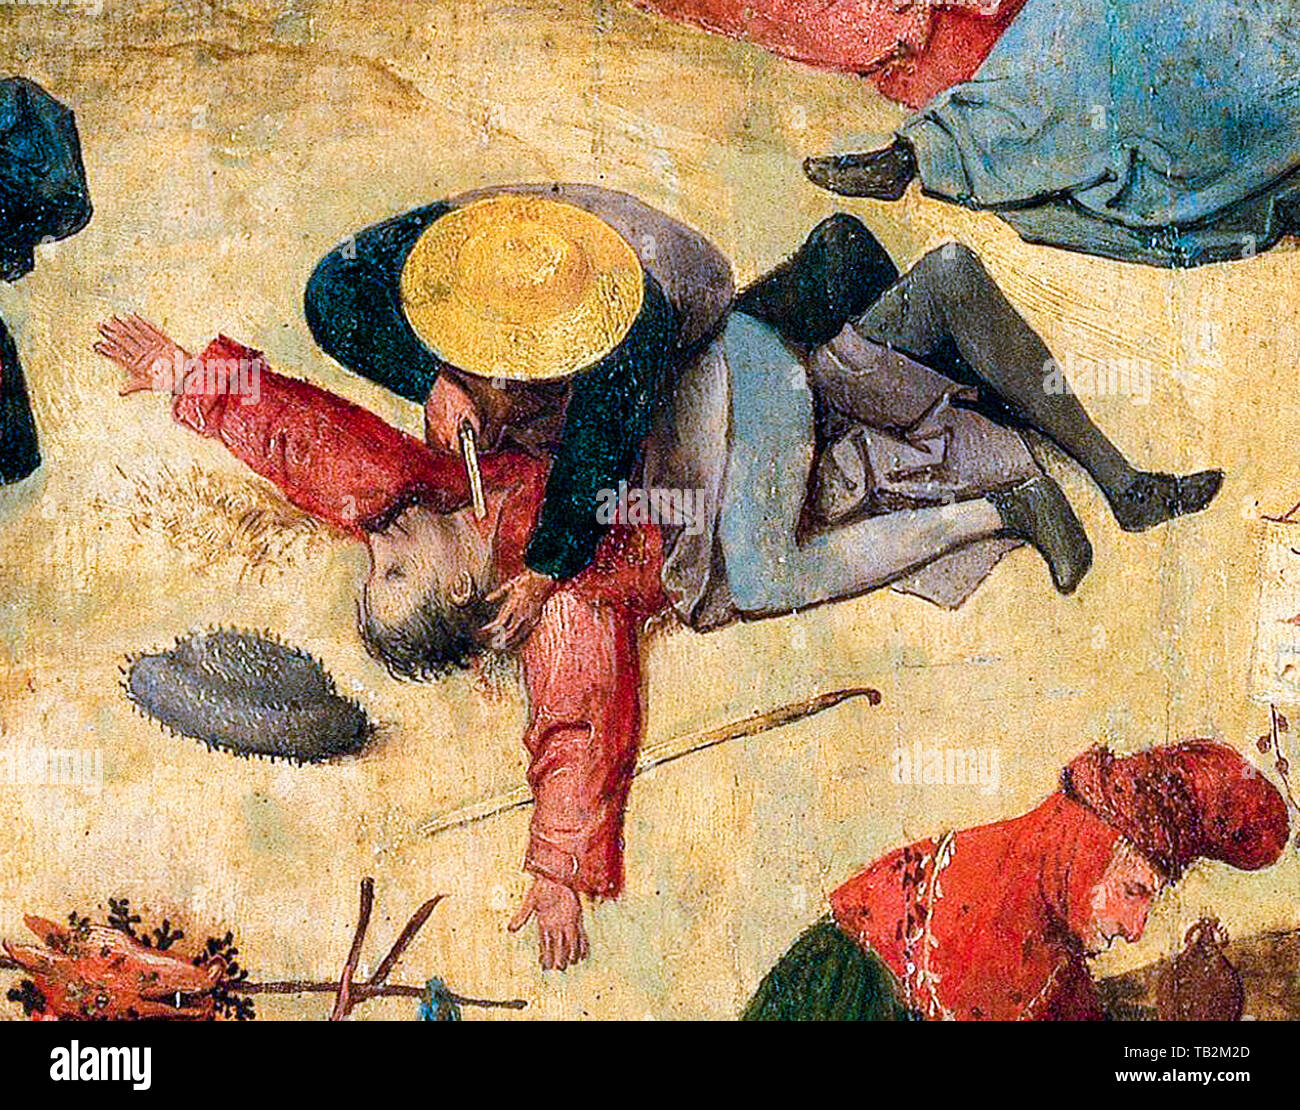 Hieronymus Bosch, The Hay Wagon (Prado), zentrale Tafel, Detail, Mann schneidet einem anderen Mann mit einem Messer die Kehle, Mord, Malerei, um 1516 Stockfoto